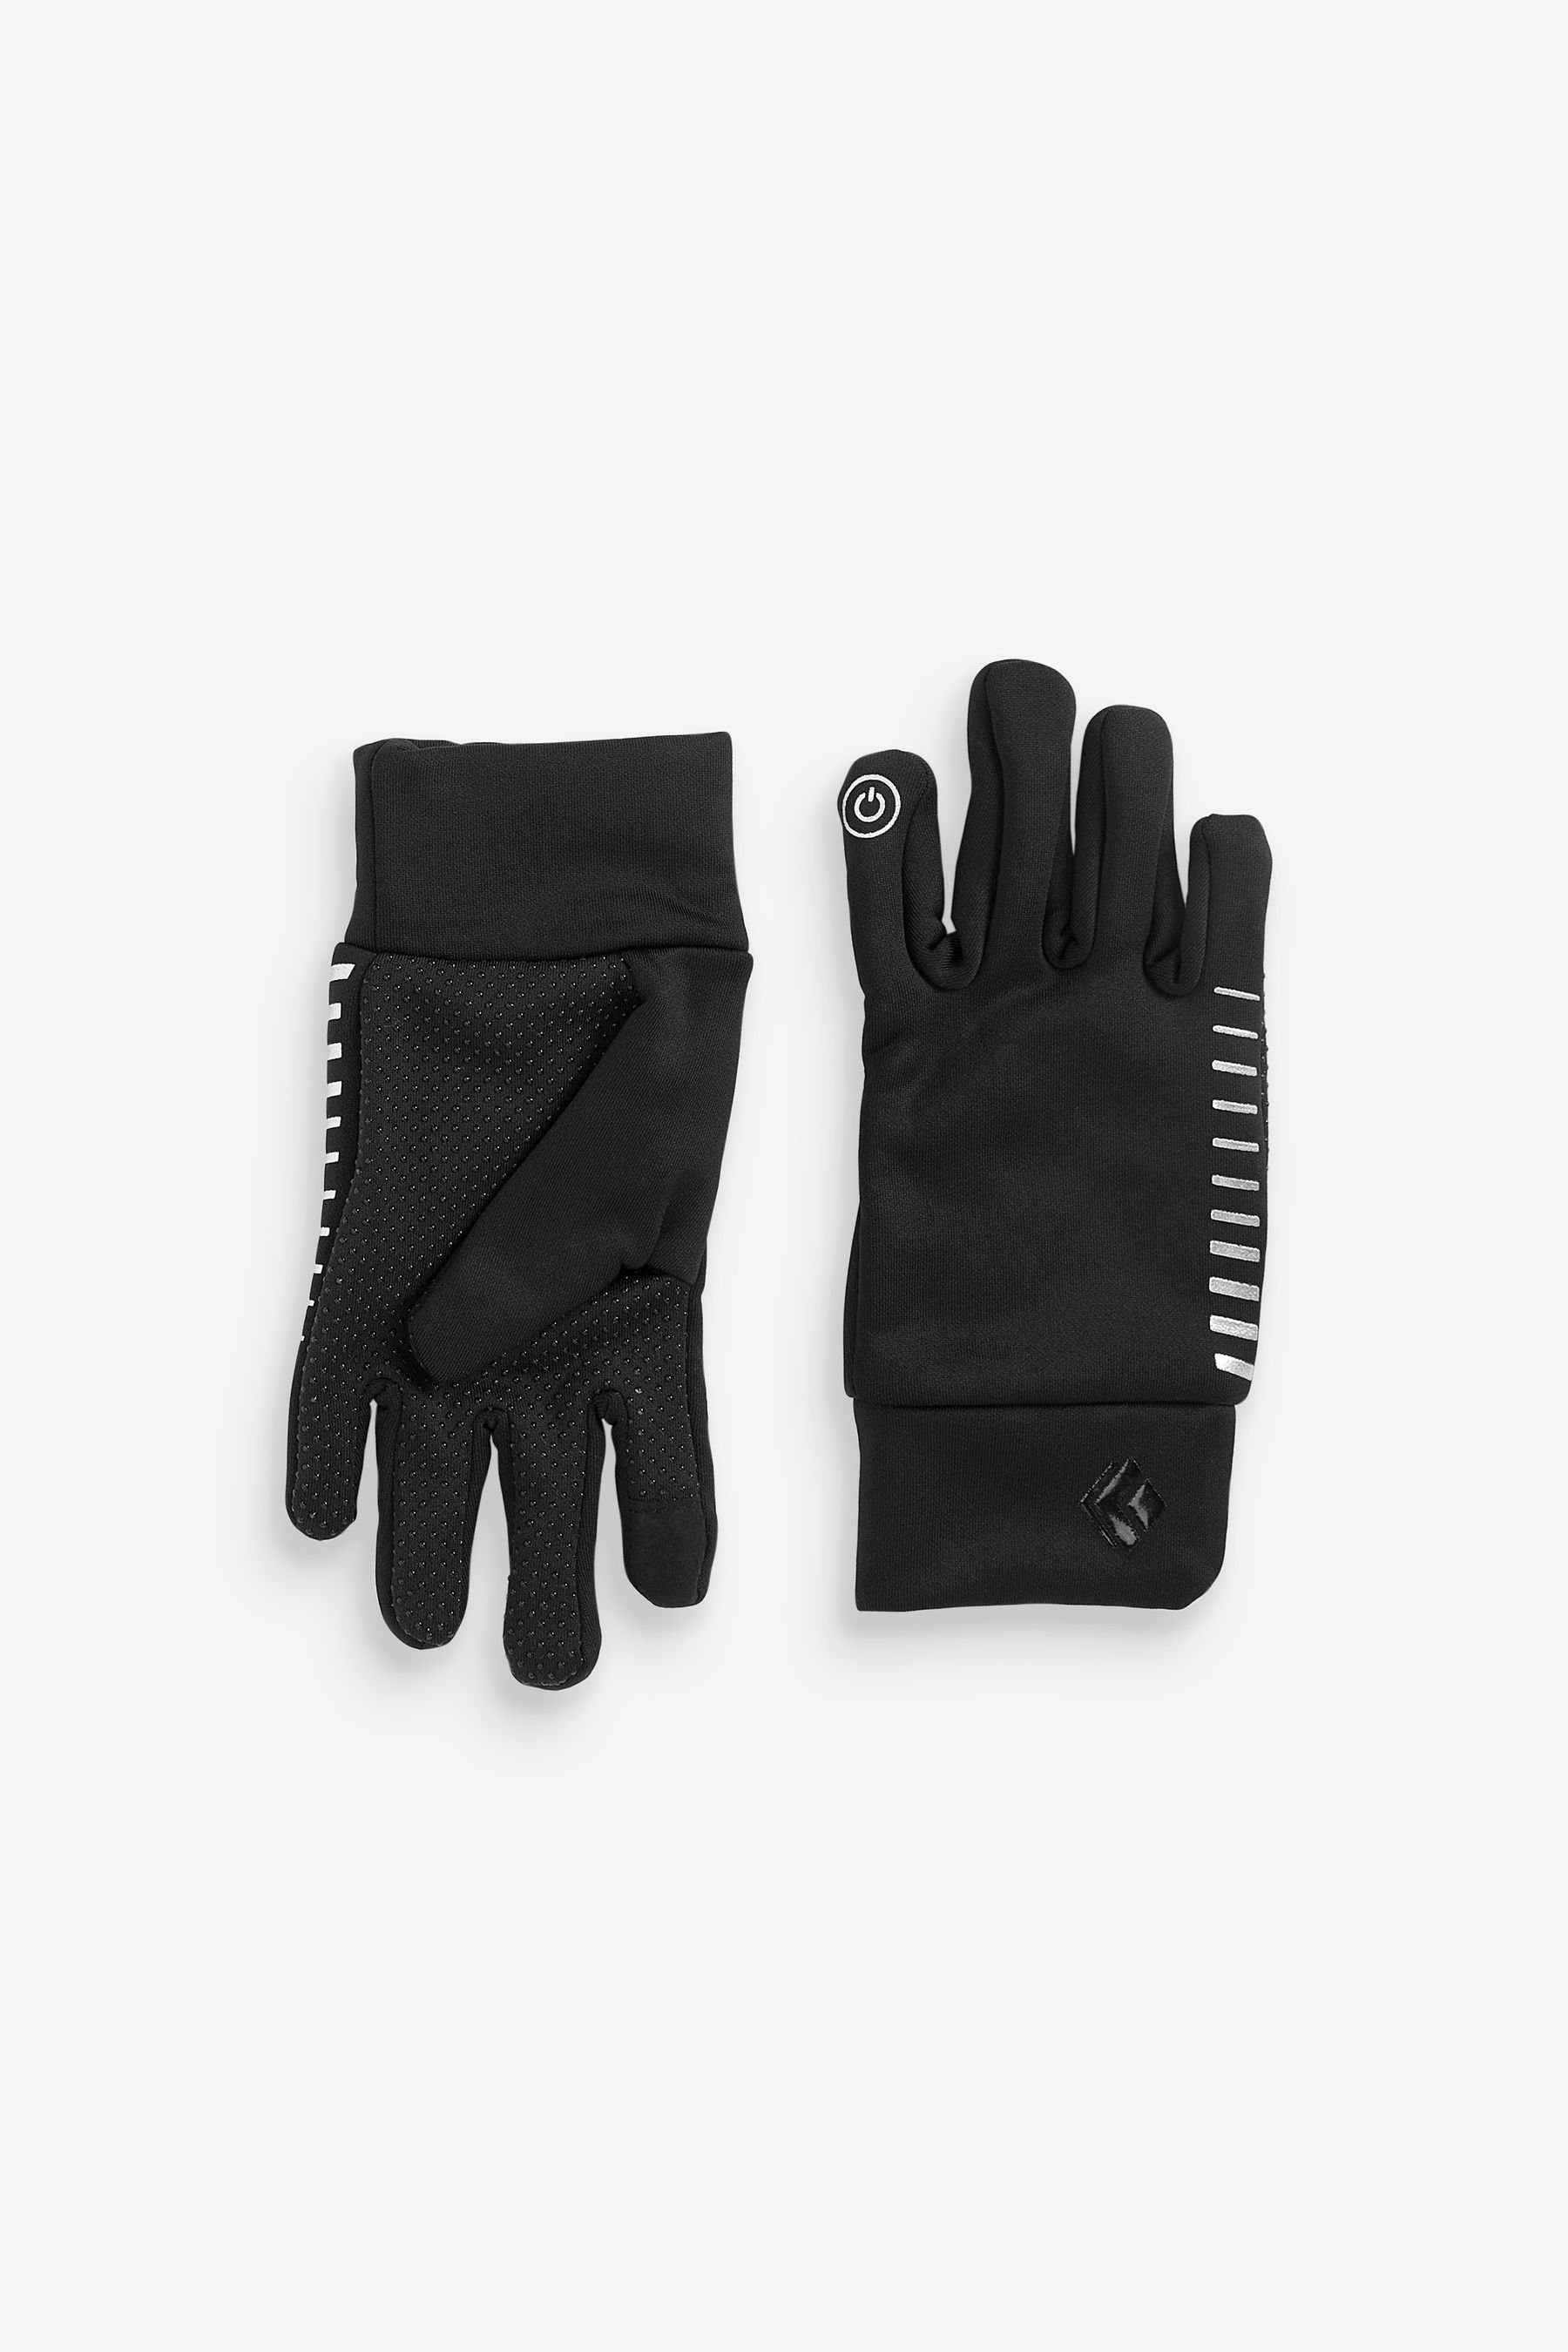 Next Strickhandschuhe Sportliche Handschuhe